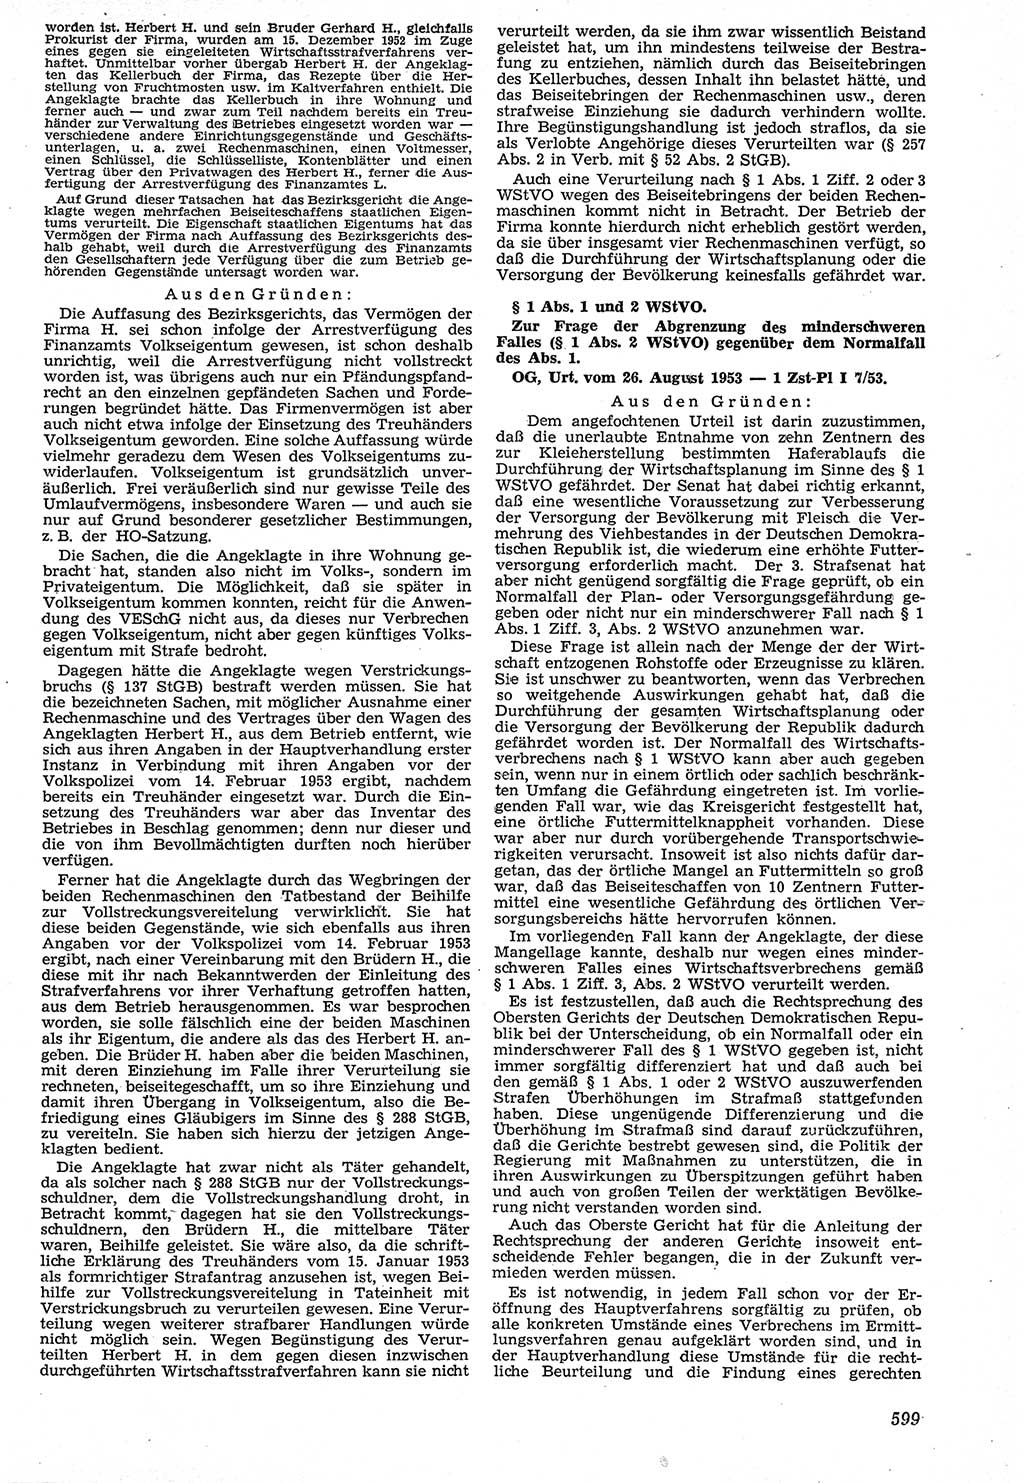 Neue Justiz (NJ), Zeitschrift für Recht und Rechtswissenschaft [Deutsche Demokratische Republik (DDR)], 7. Jahrgang 1953, Seite 599 (NJ DDR 1953, S. 599)